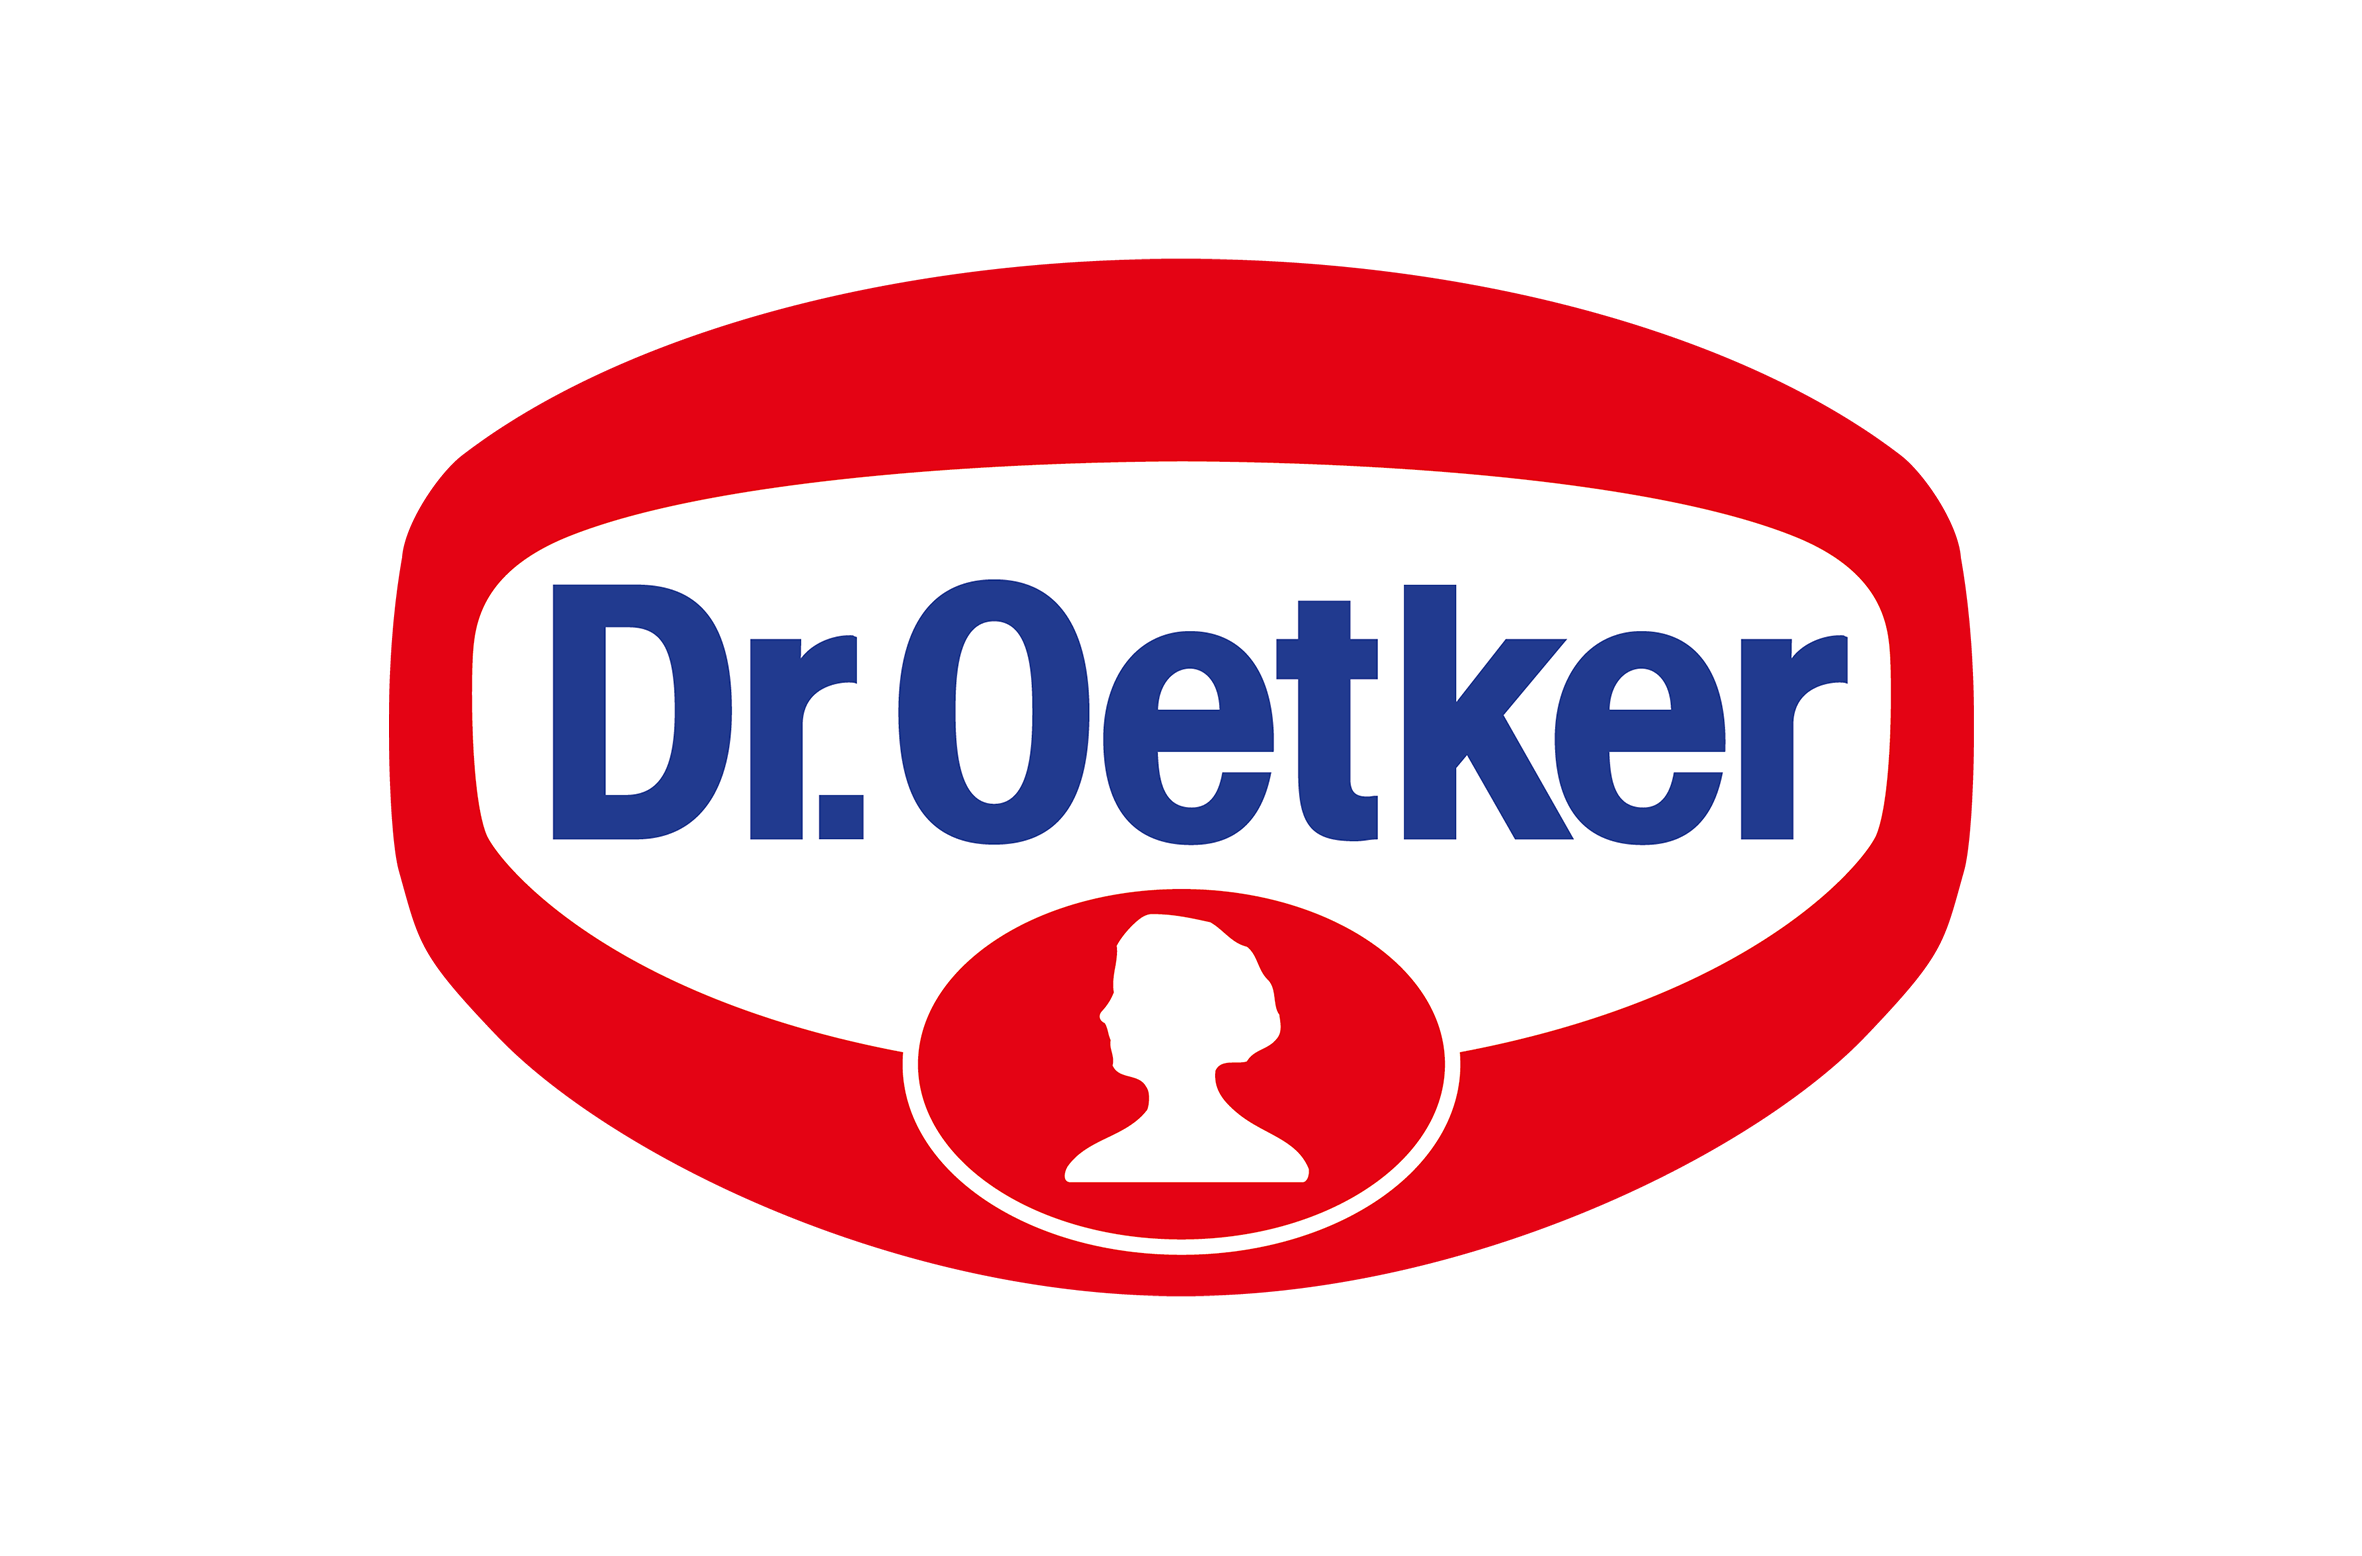 Produktions-Joint Venture von Dr. Oetker und Molkerei Gropper am 1. Juli gestartet